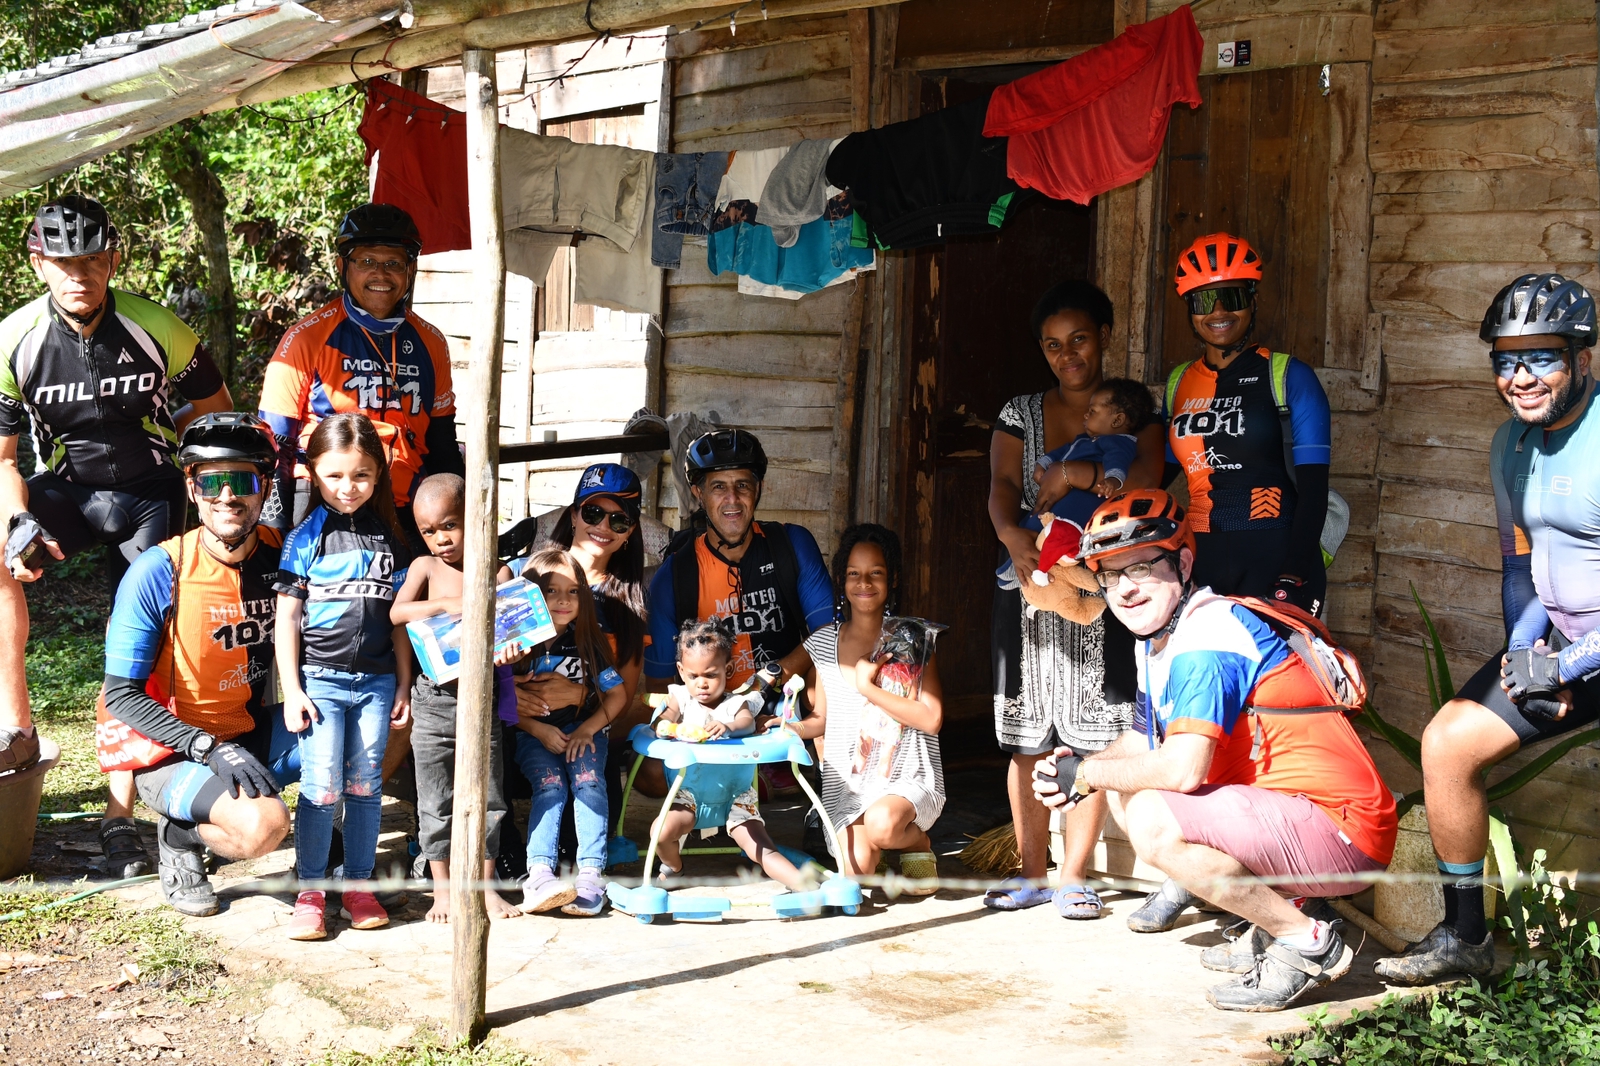 Club de ciclista Monteo101 y Bici Centro reparten juguetes en la comunidad el Higüero.